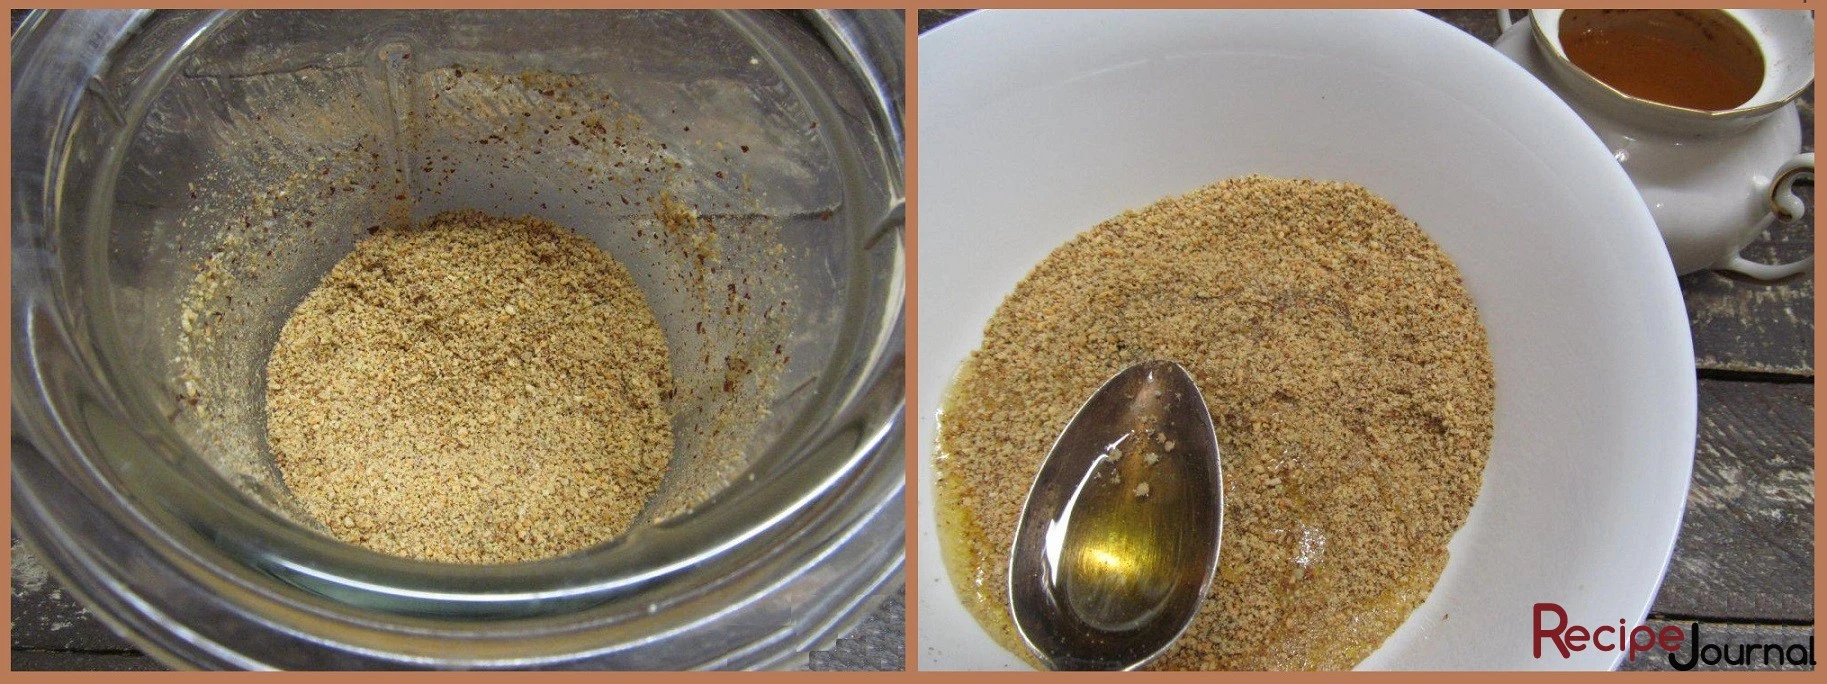 Подсушенный арахис измельчаем в блендере и смешиваем с измельченными поджаренными семечками. Добавляем мед и снова хорошо перемешиваем.